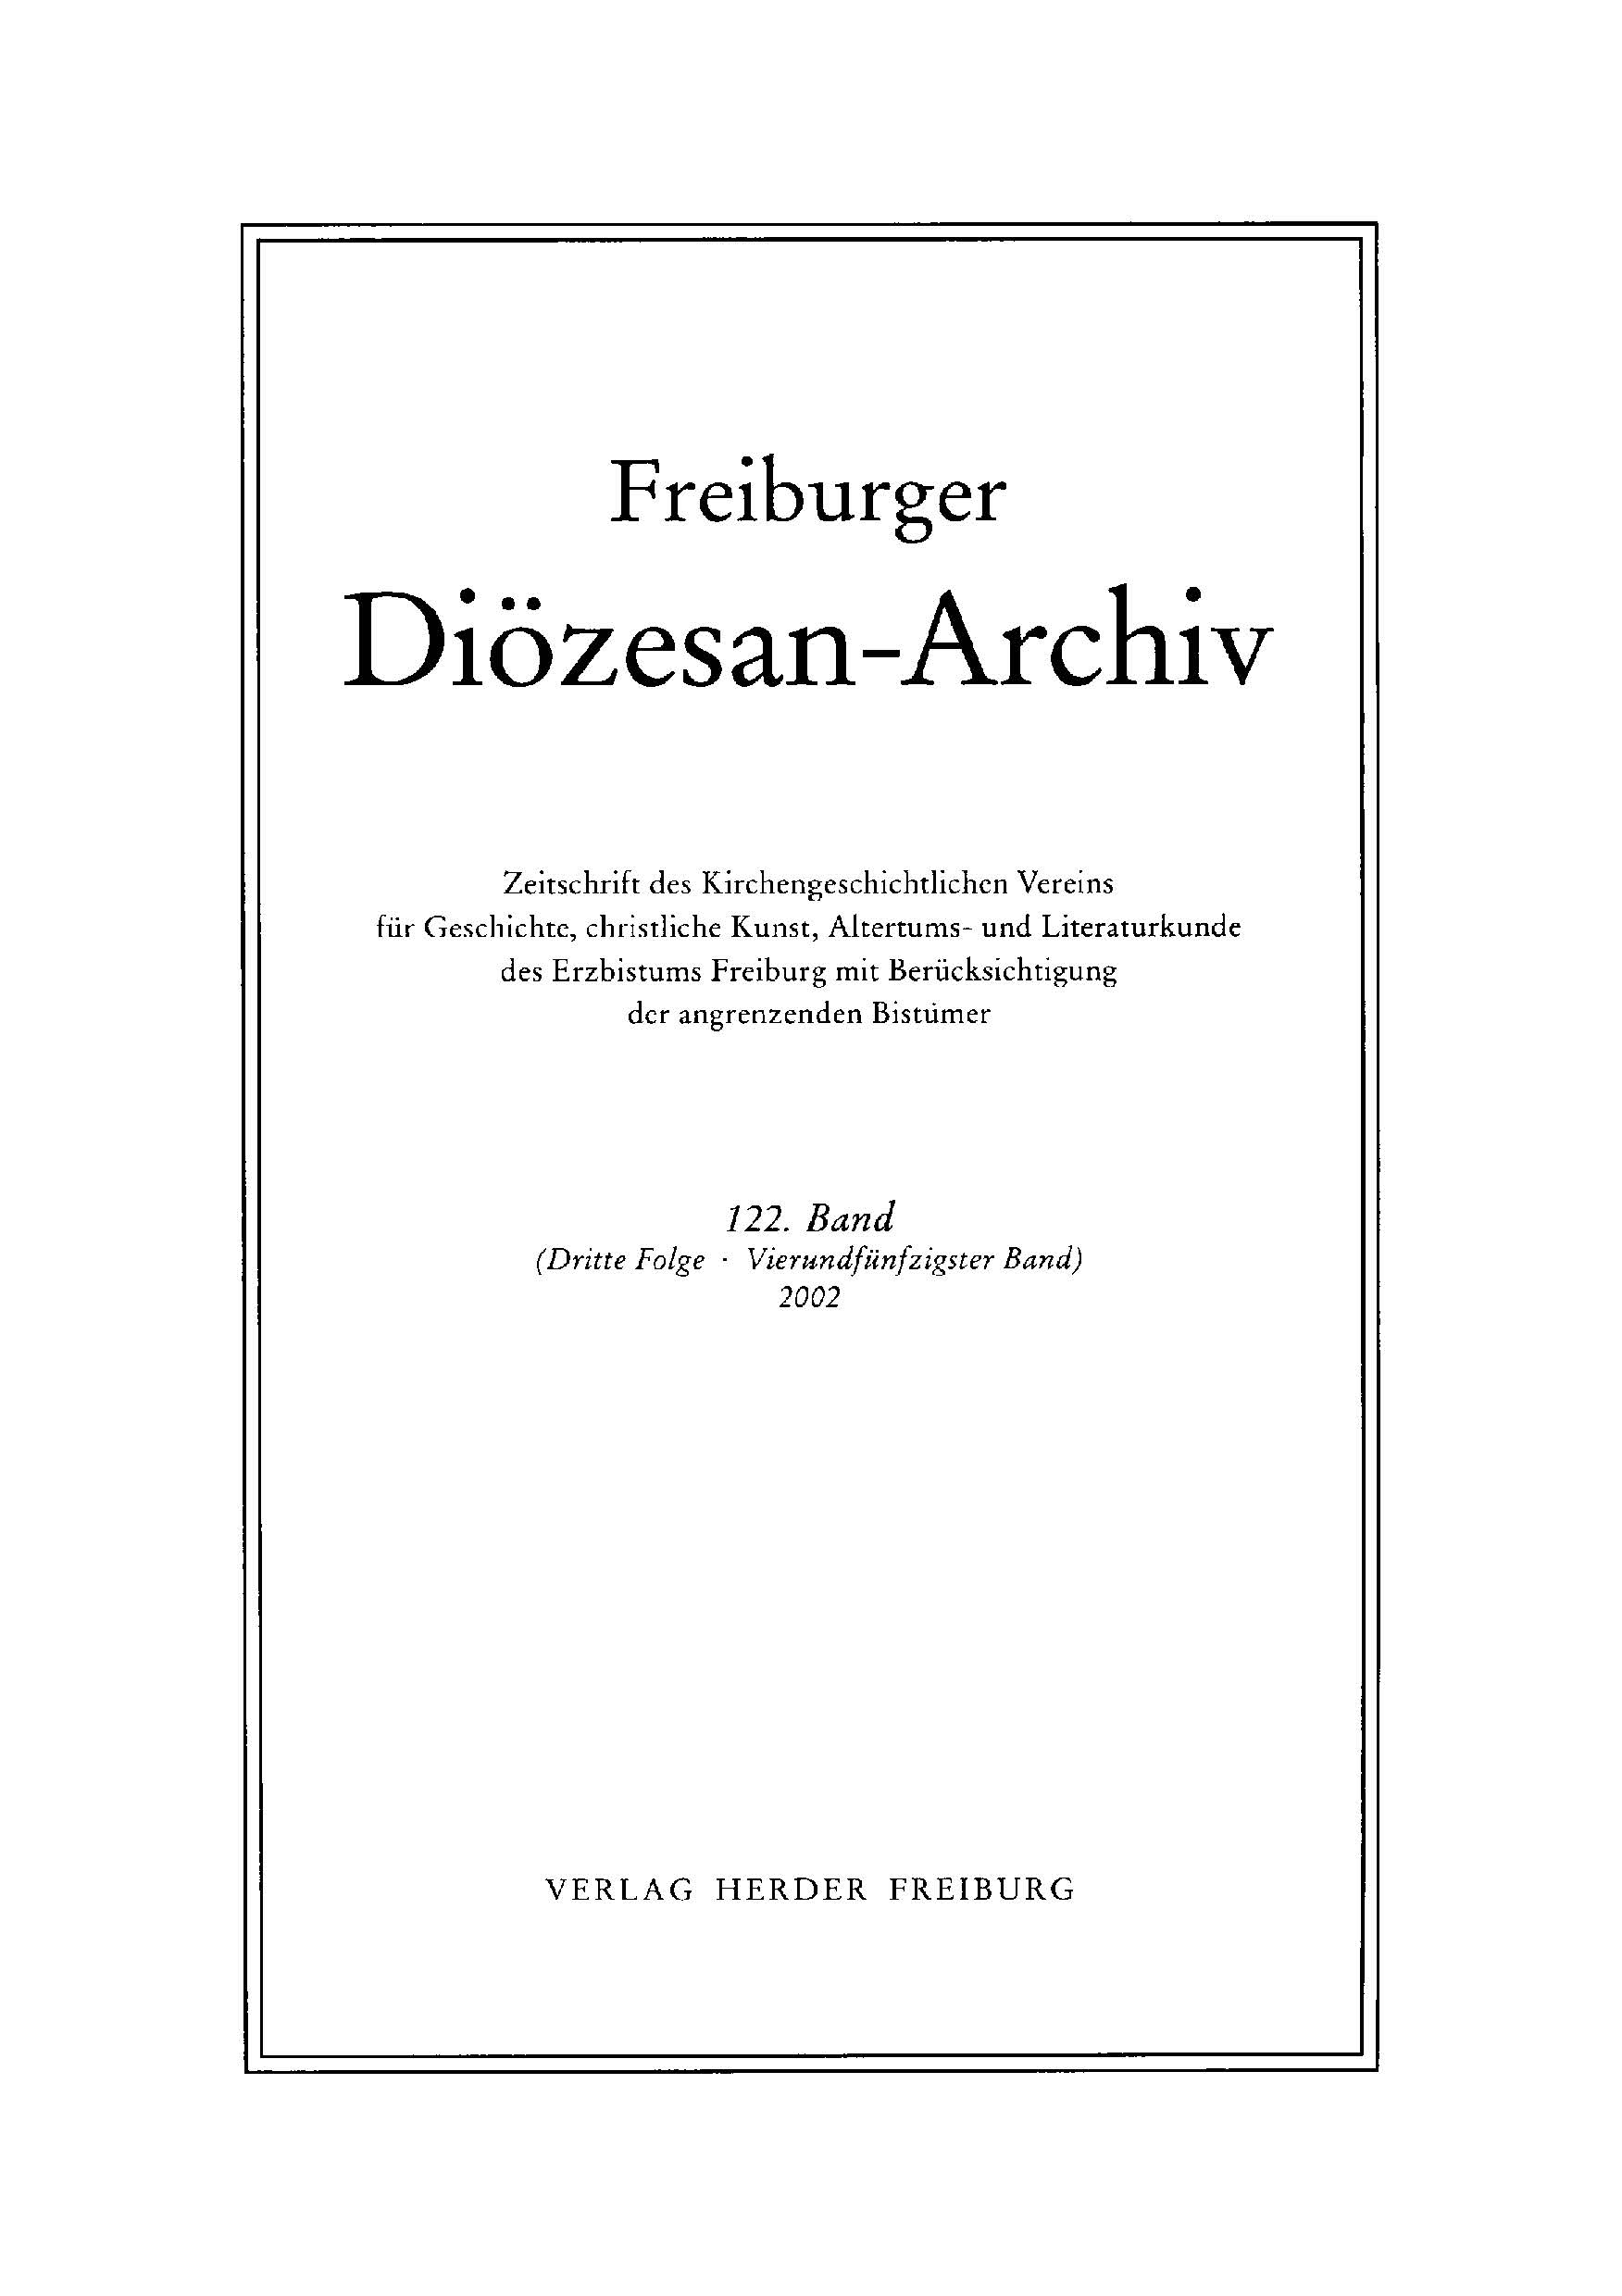 Cover der Zeitschrift Freiburger Dioezesan-Archiv